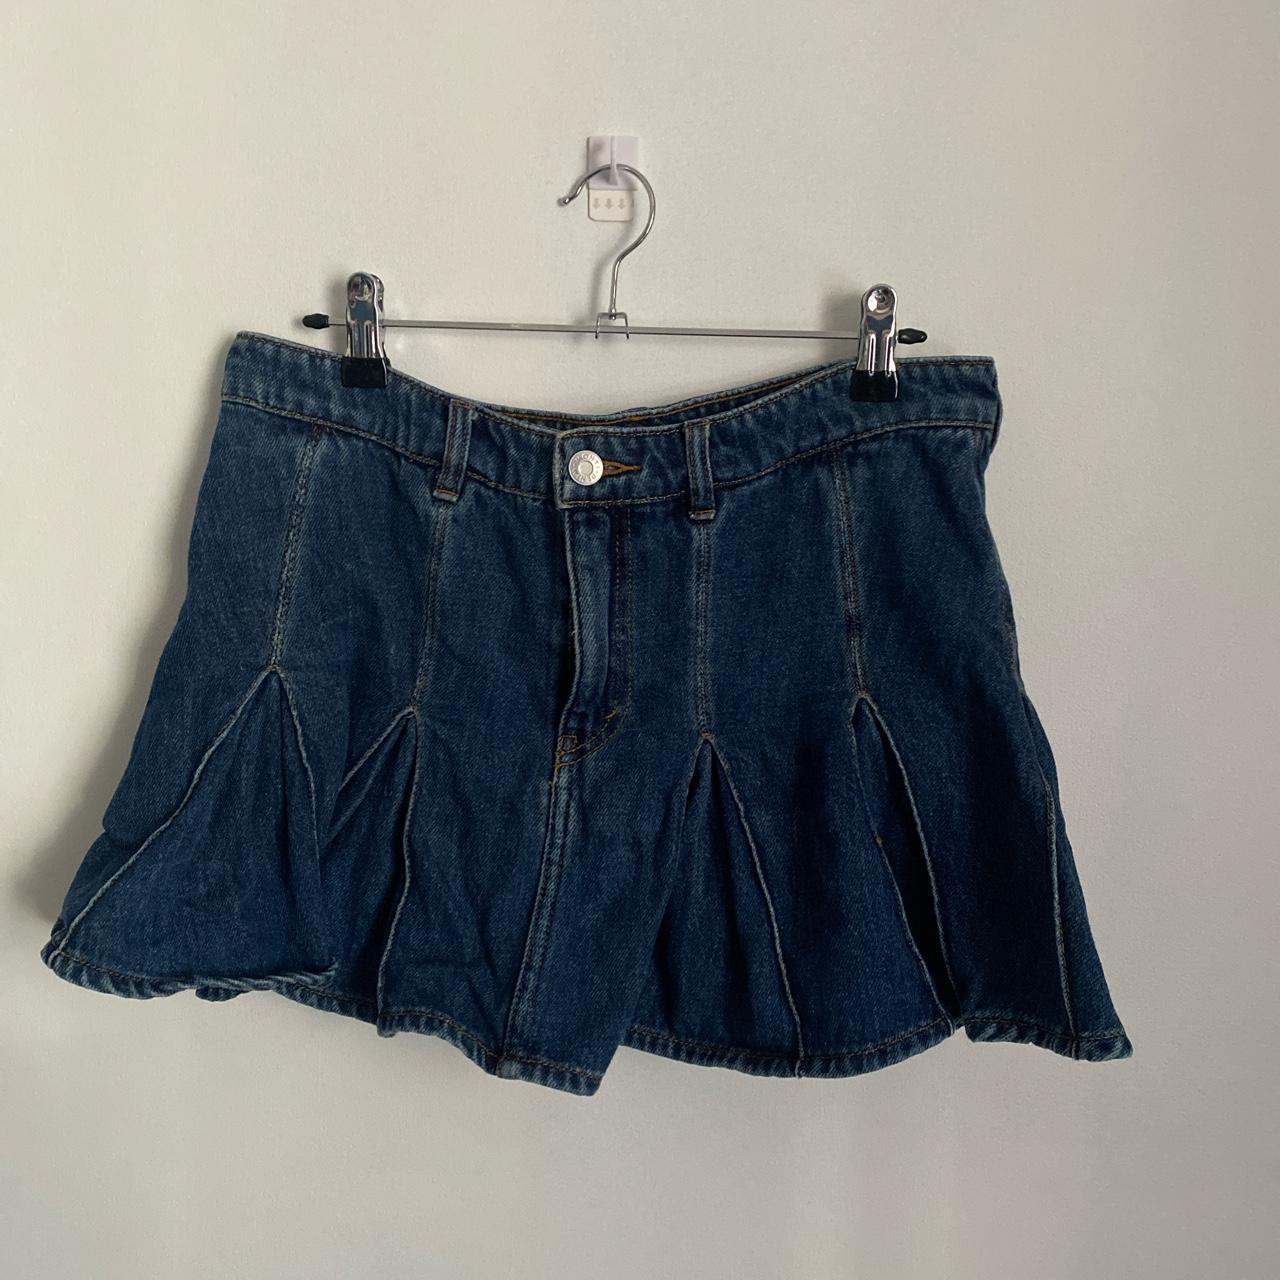 Pleated denim skirt Brand: Monki Labelled 36, I... - Depop